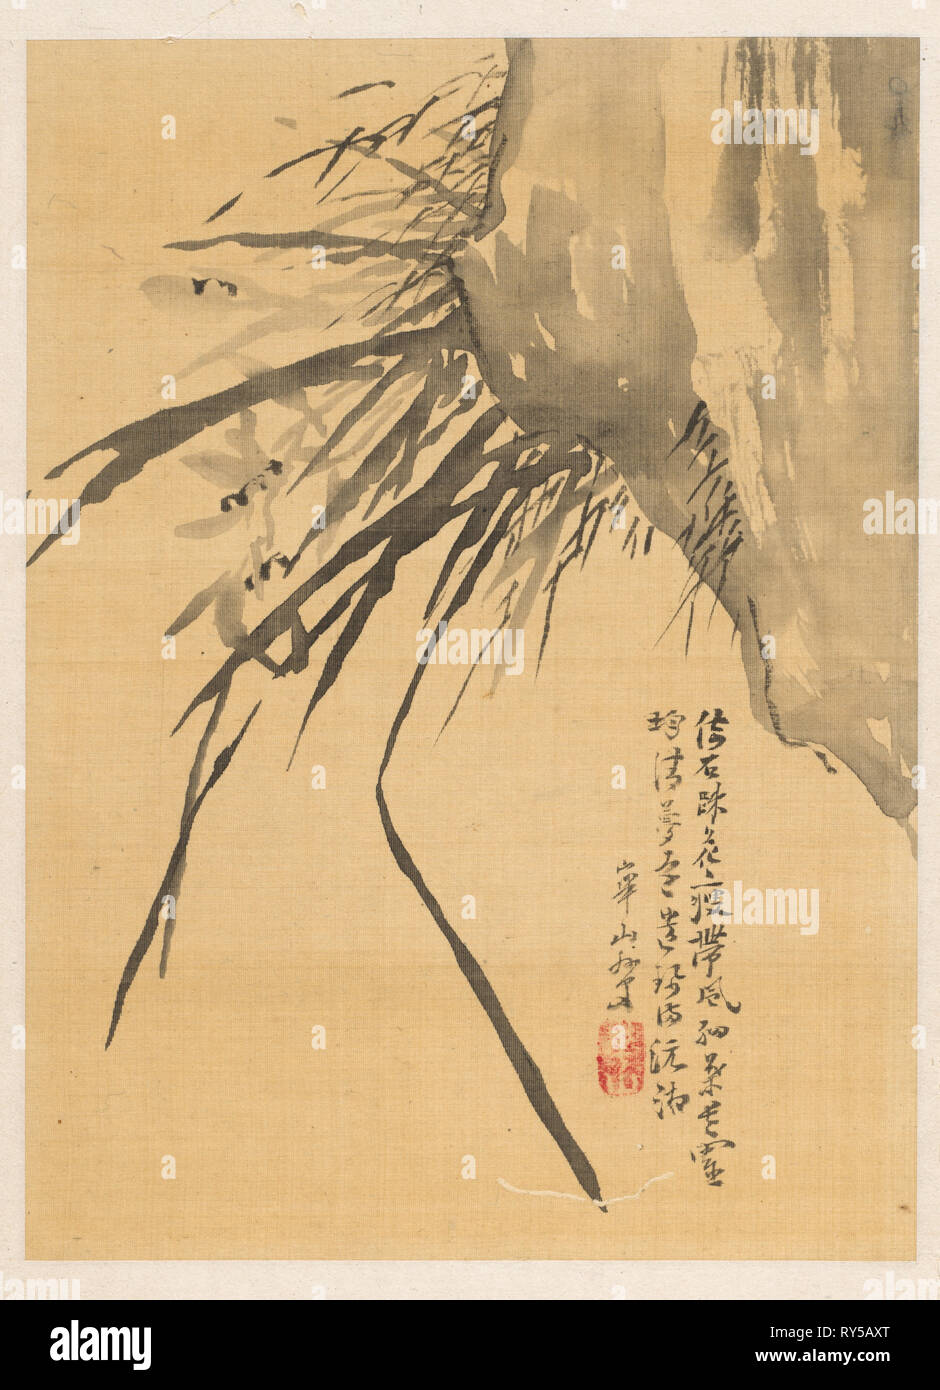 Orchid, 19e siècle. Watanabe Kazan (1793-1841), Japonais. Album Leaf ; encre sur soie ivoire ; feuille : 26,3 x 19,1 cm (10 3/8 x 7 1/2 po Banque D'Images